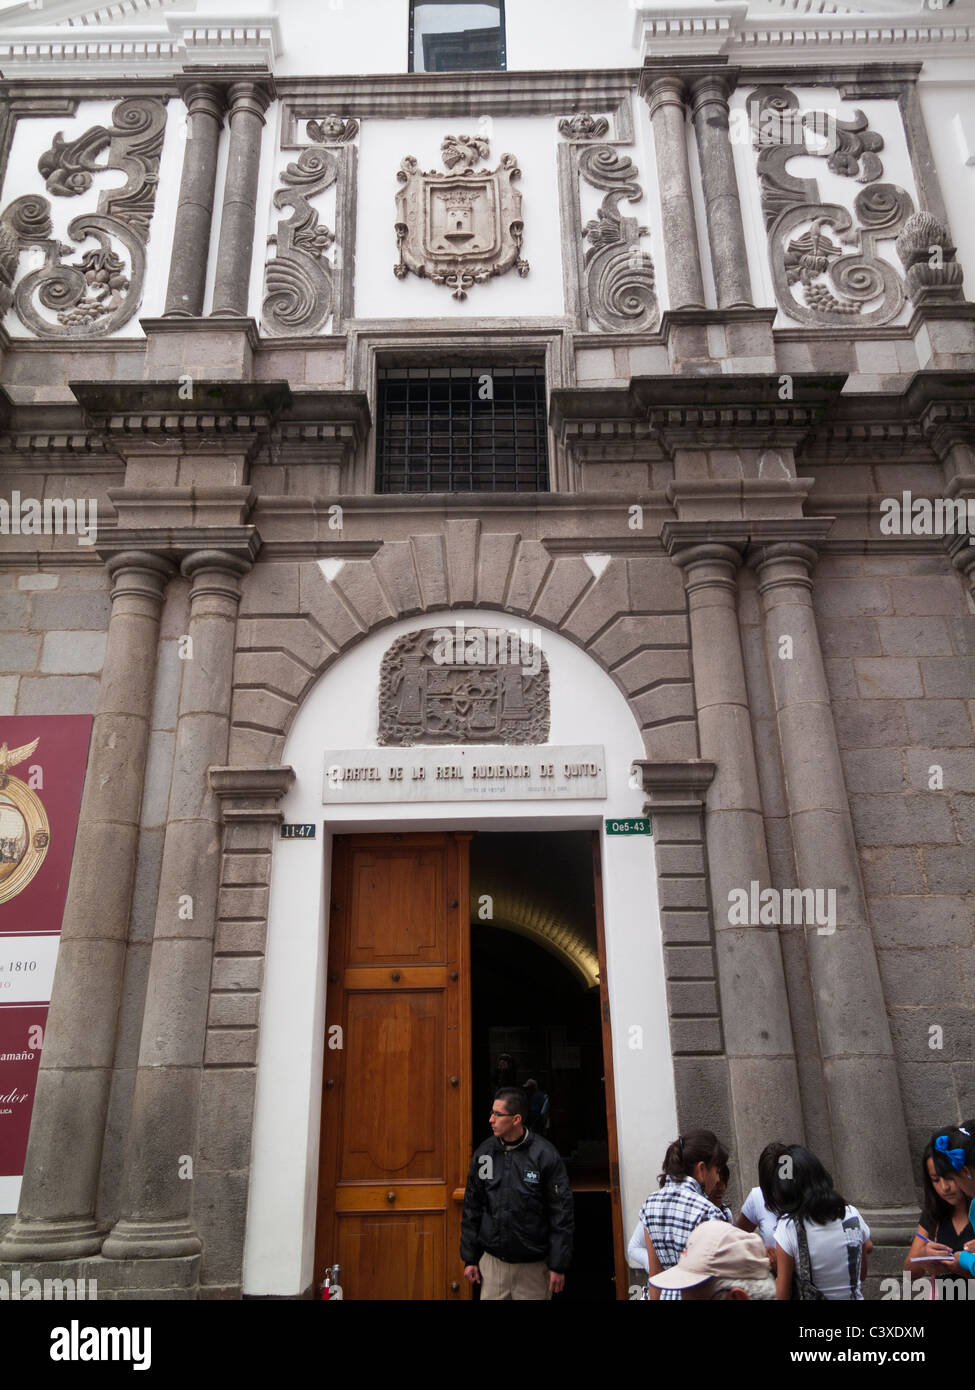 former Cuartel de la Real Audiencia de Quito, now a museum, Quito, Ecuador Stock Photo